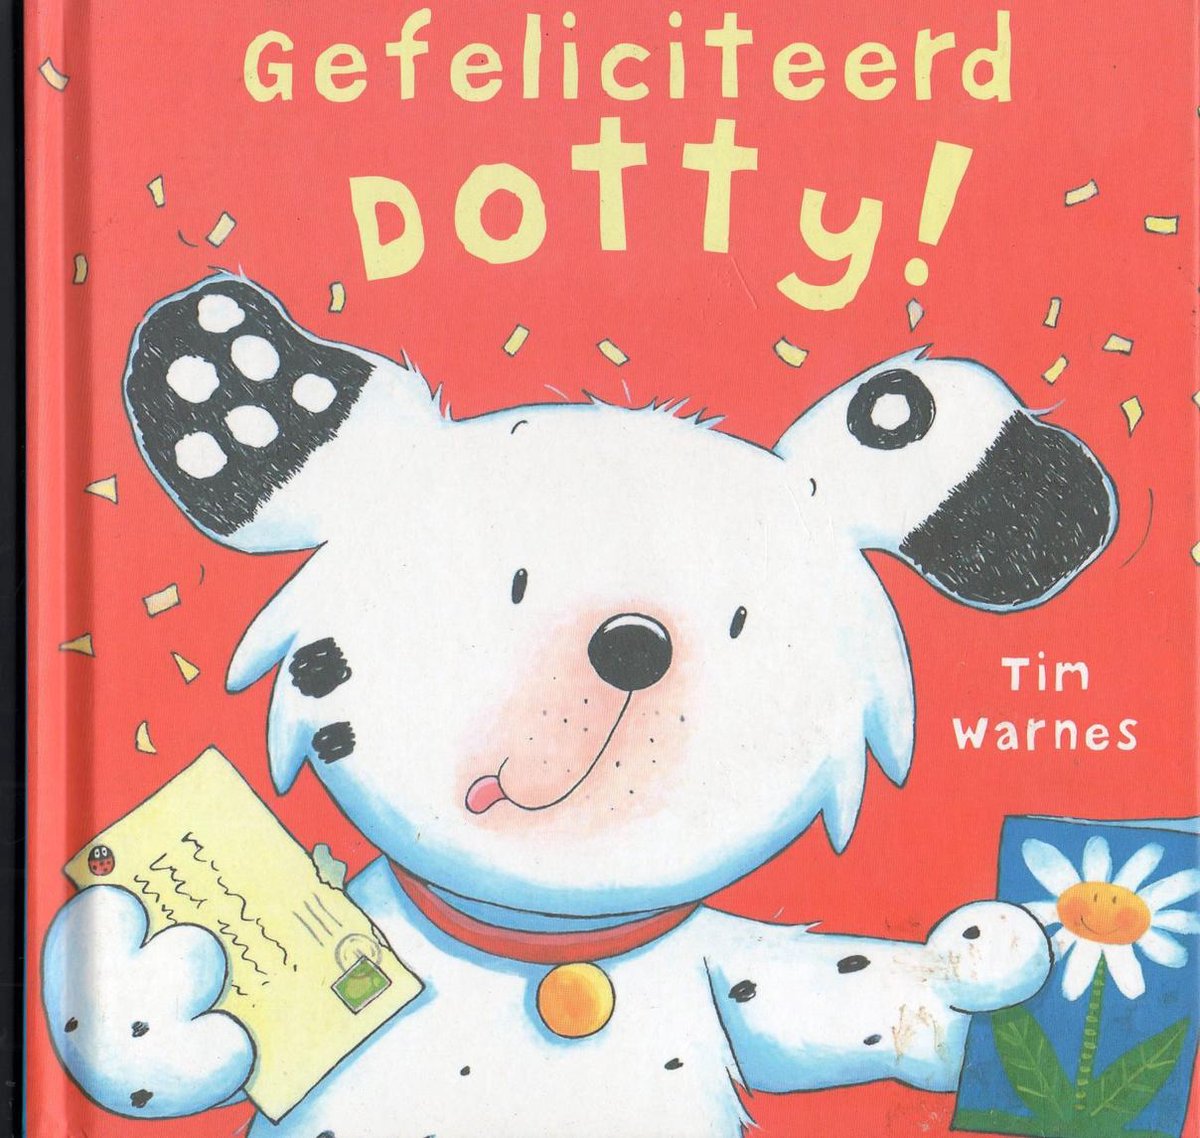 Gefeliciteerd Dotty!